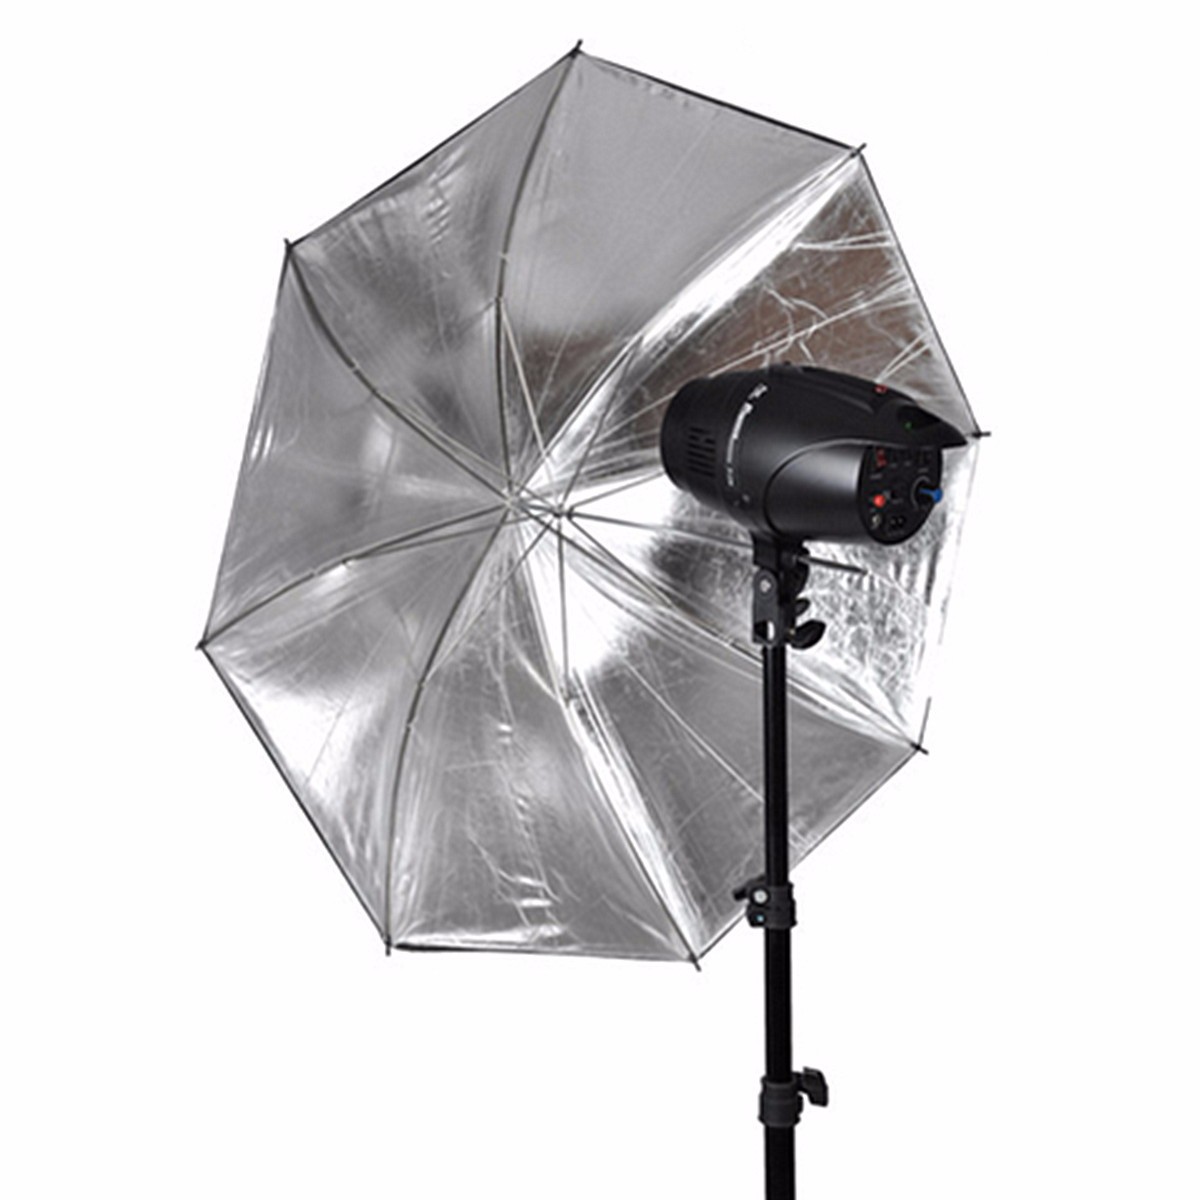 

110см 43 дюймов черный серебристый отражающий зонт отражатель для фотографии свет студии софтбокс